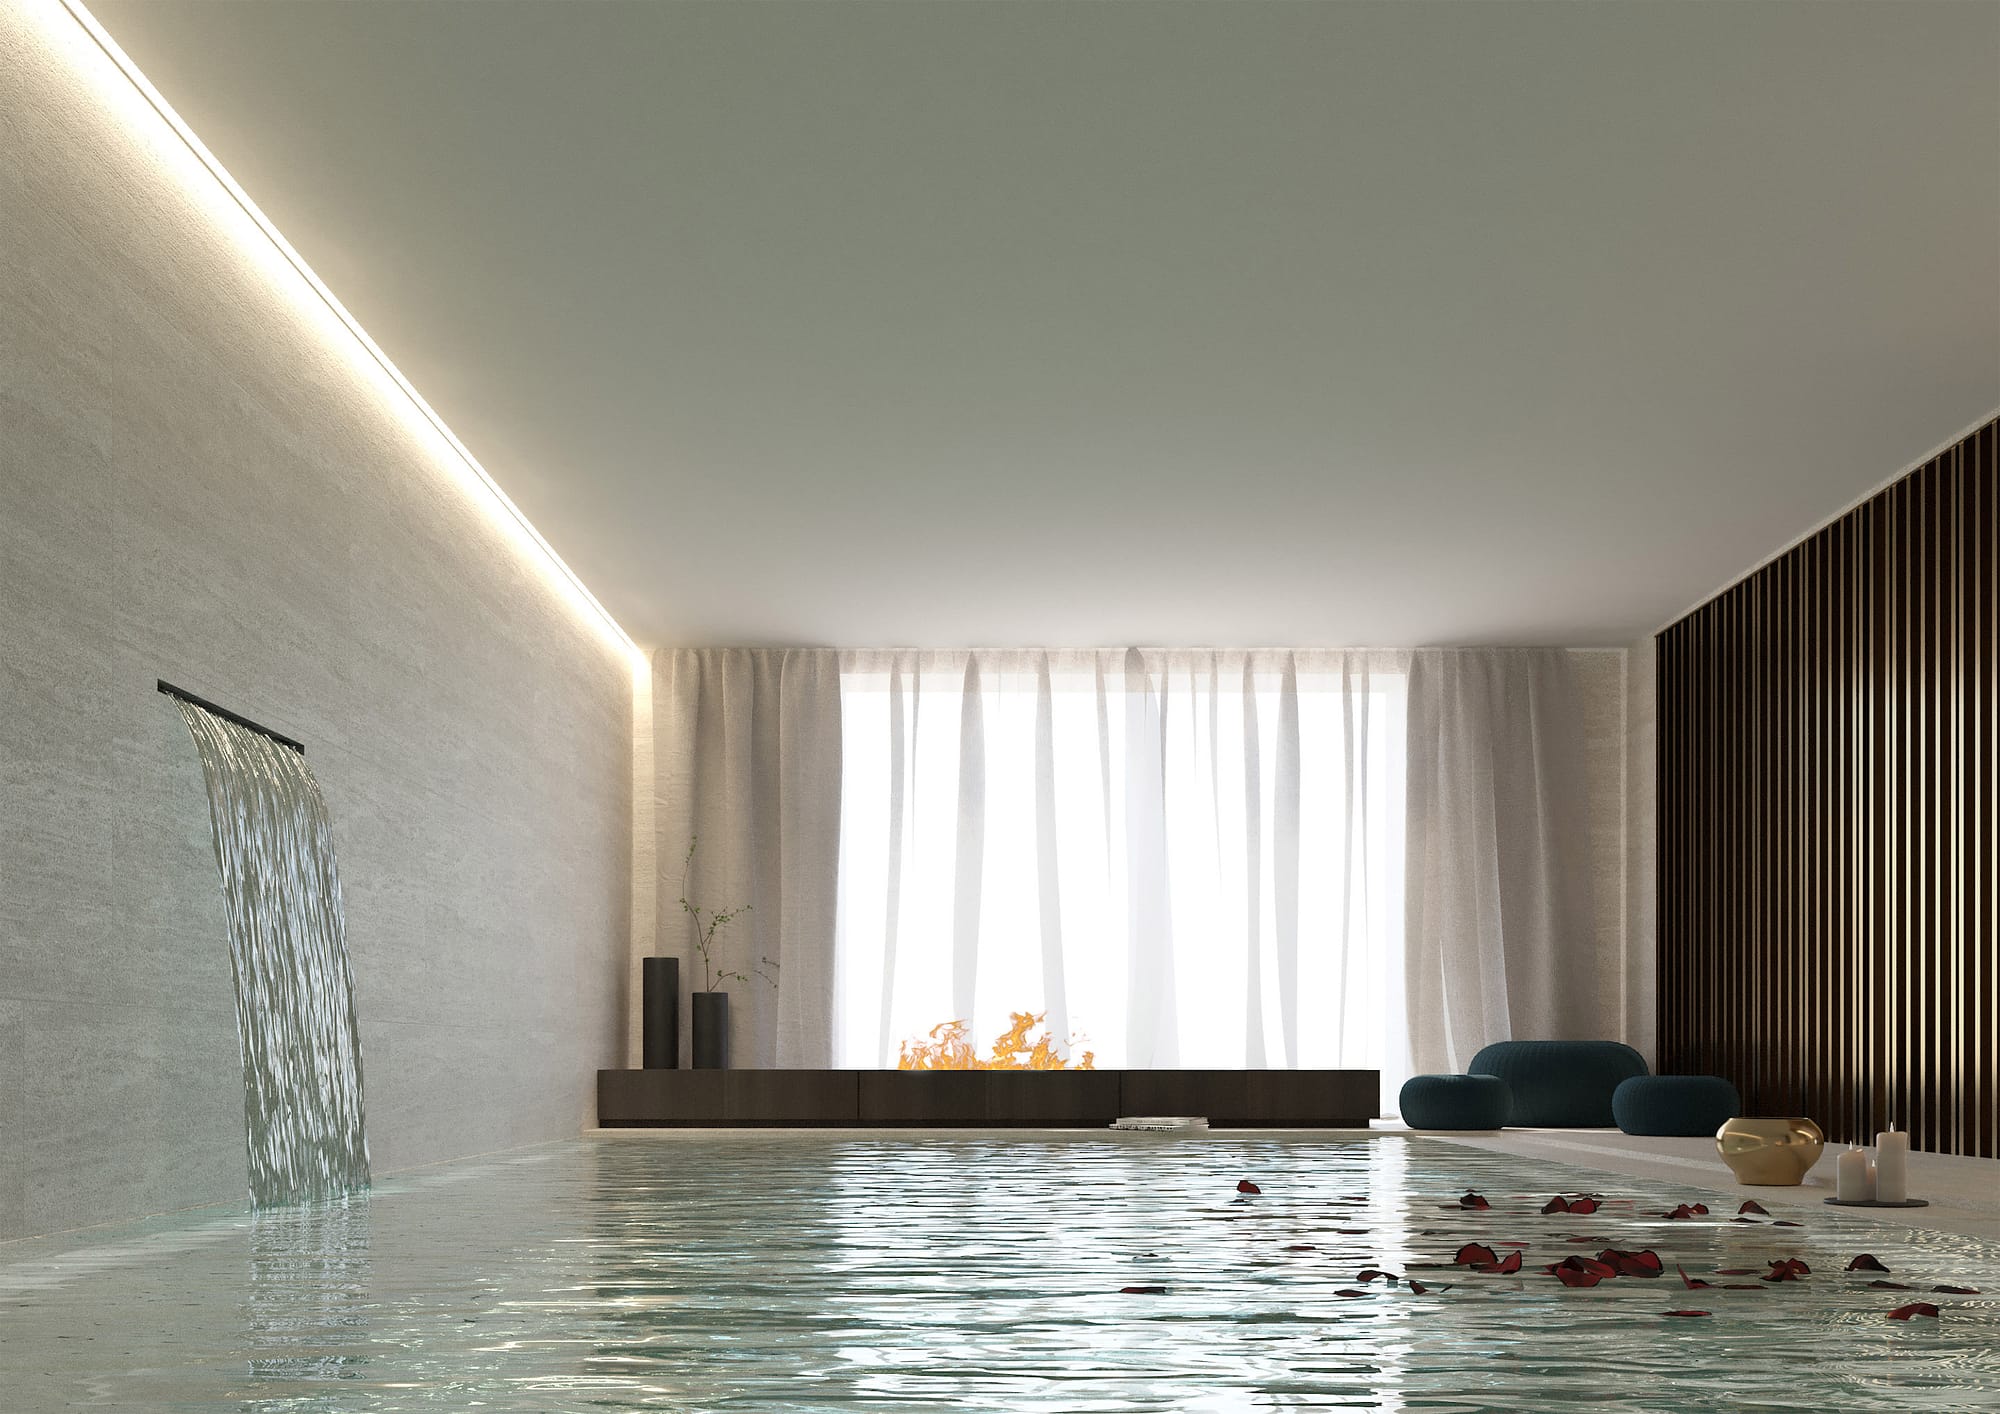 Corona D'Oro Hotel & Spa, vista su piscina interna con cascata e camino ad acqua